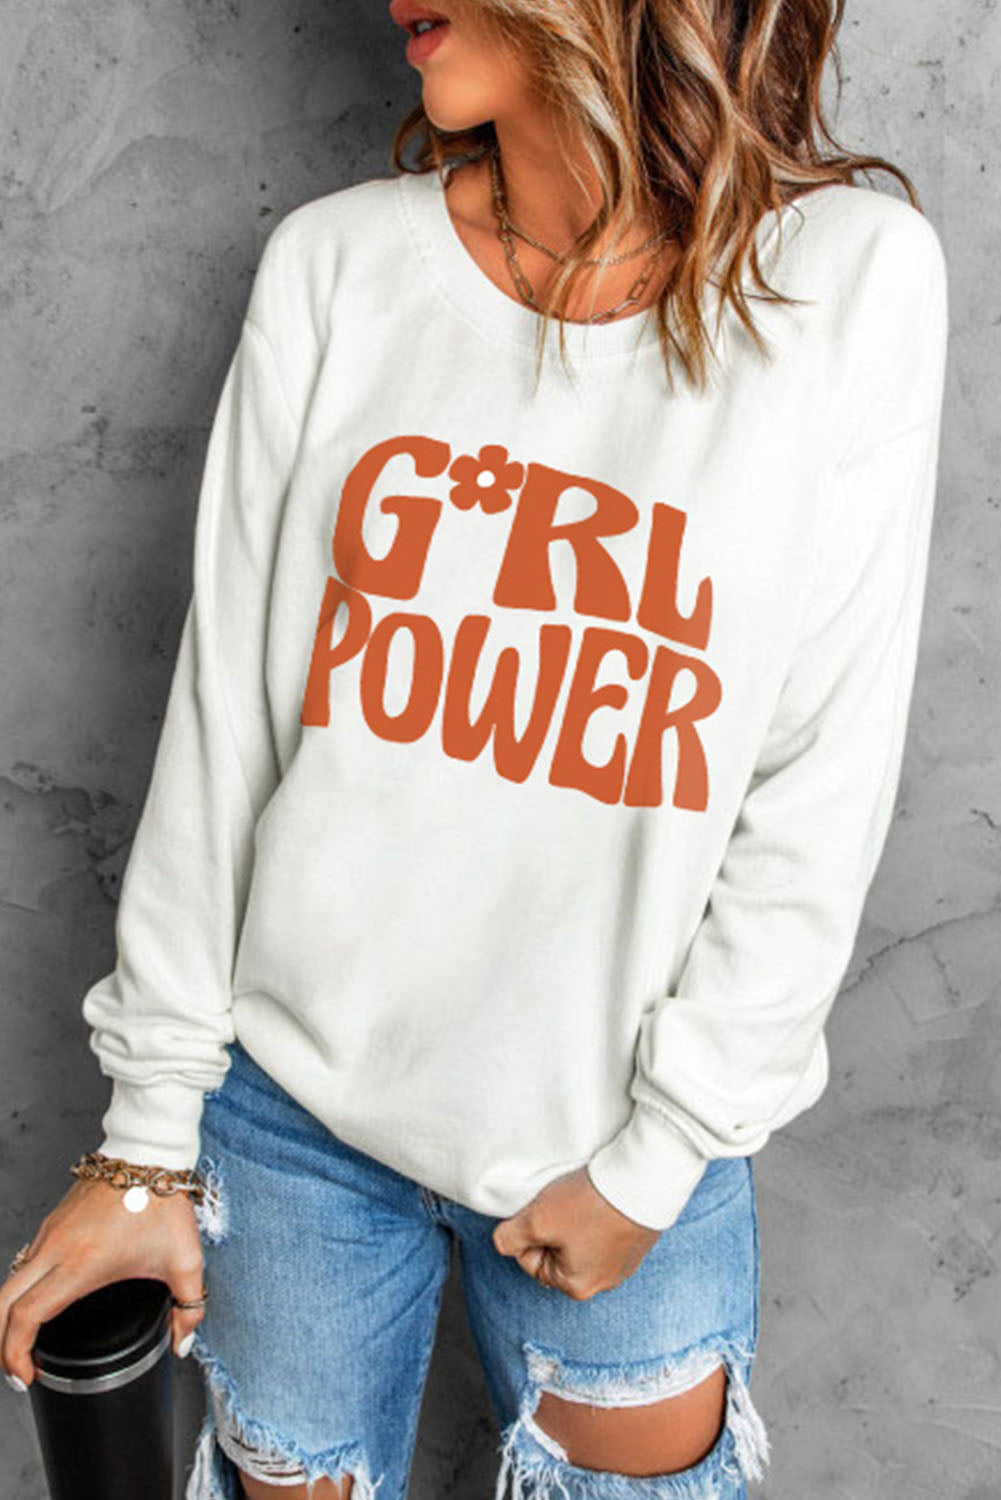 GIRL POWER Sweatshirt - ONLINE EXCLUSIVE